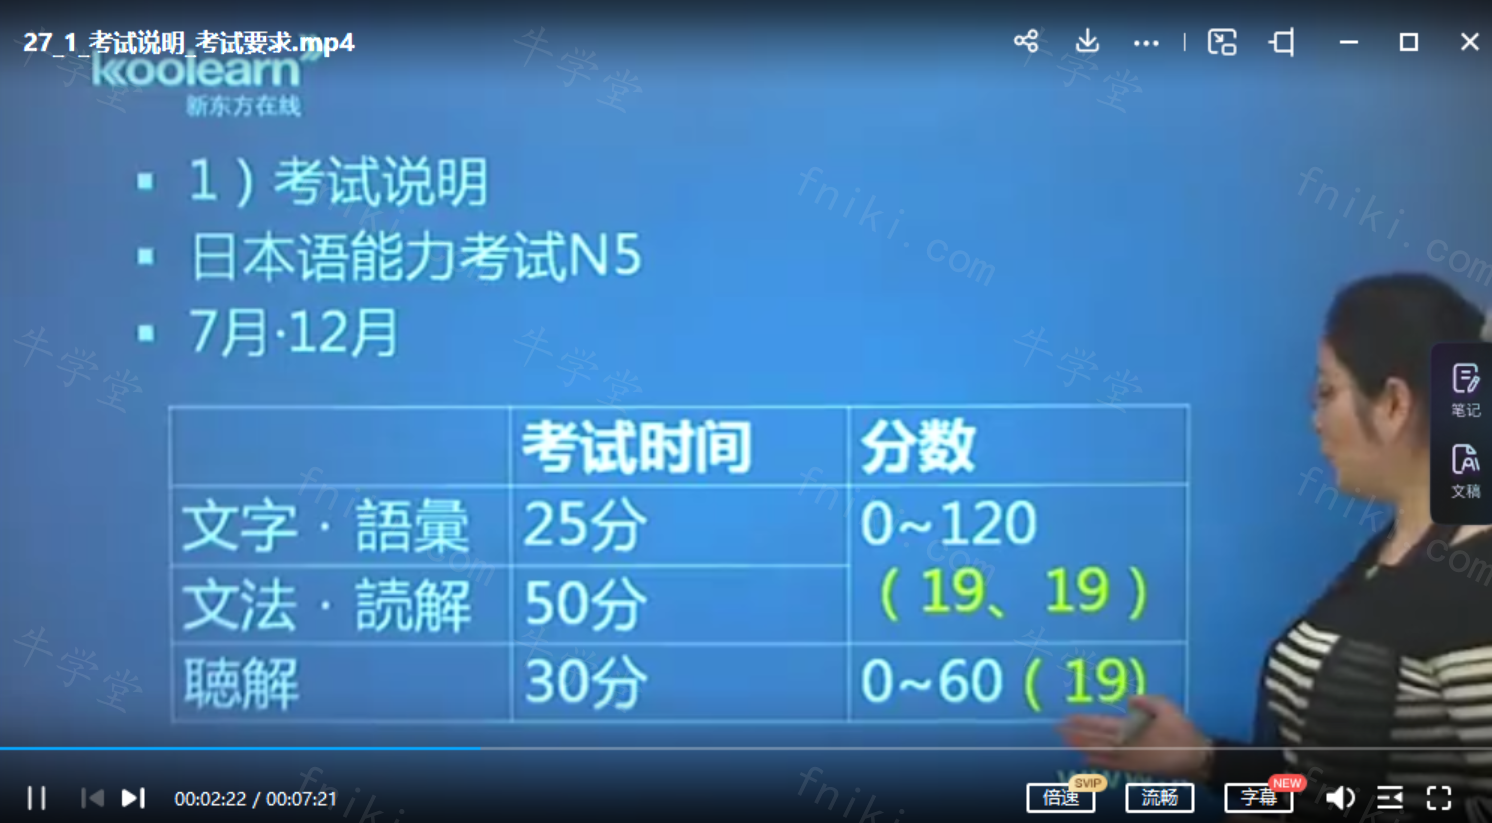 日语学习课程日语能力考N5自学网课零基础入门视频n12345新编教程高考标大家的日语教程